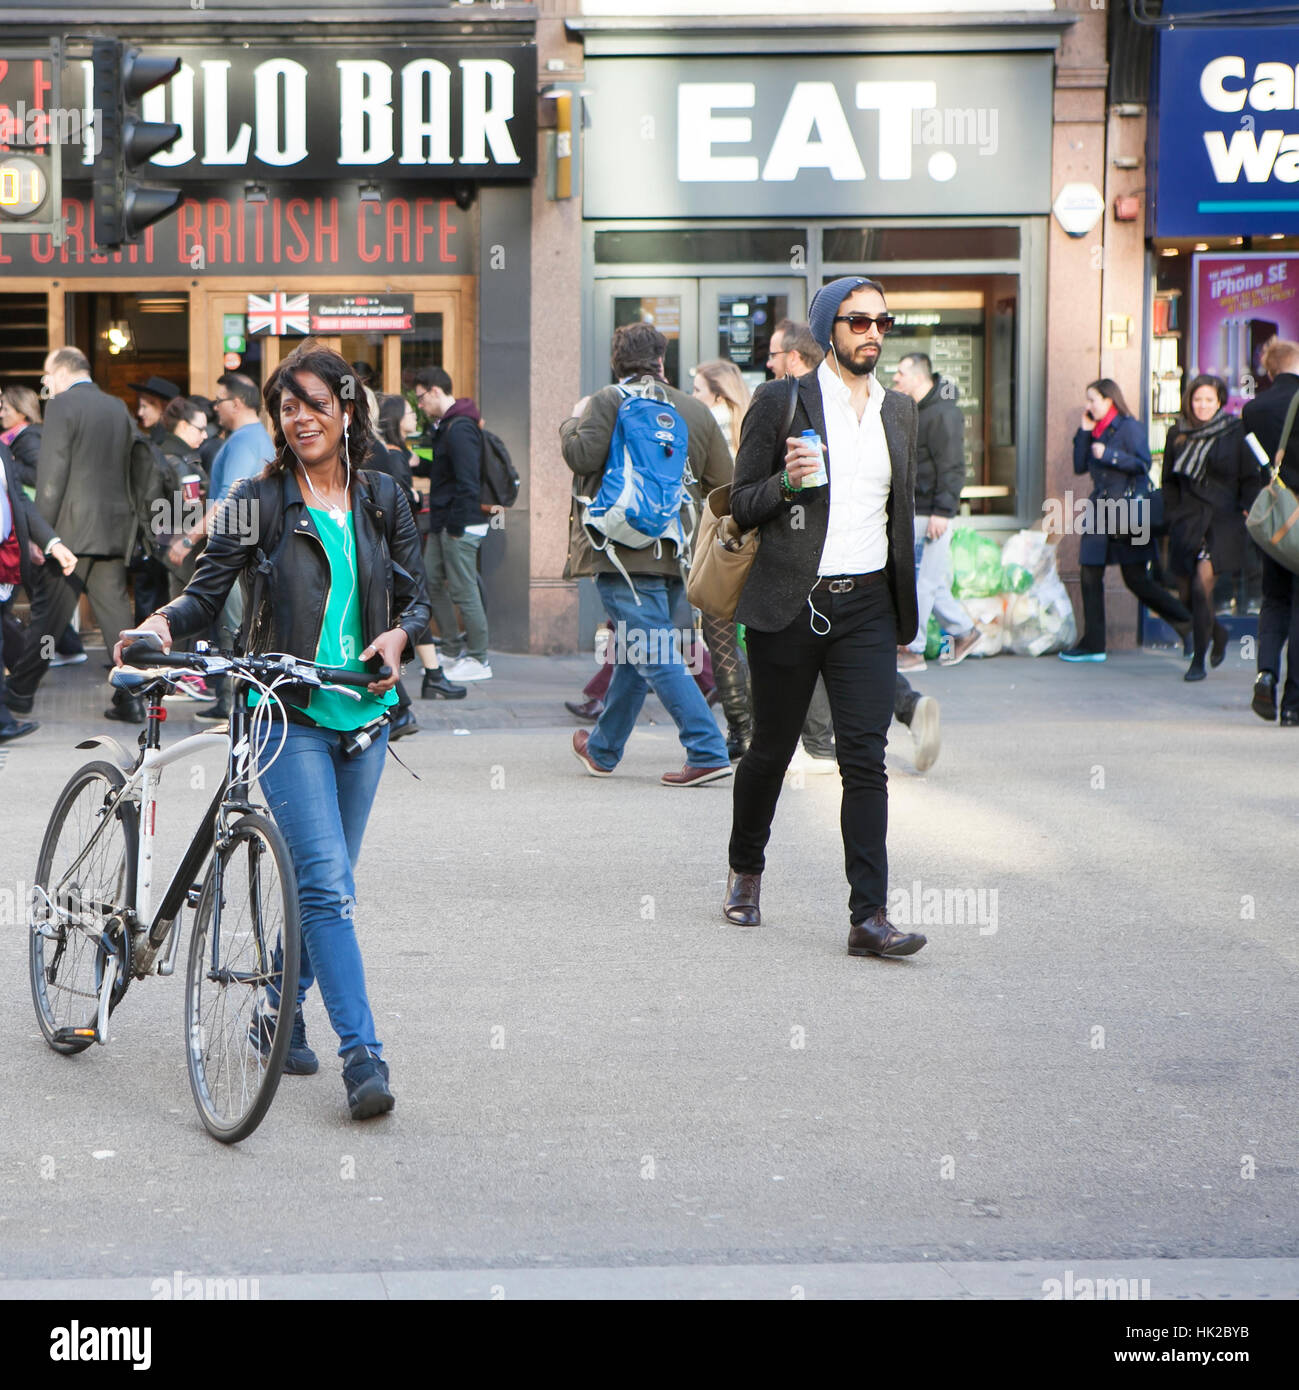 Londres, Royaume-Uni - 27 août 2016 : smiley girl in a t-shirt vert traverser la route avec un vélo Banque D'Images